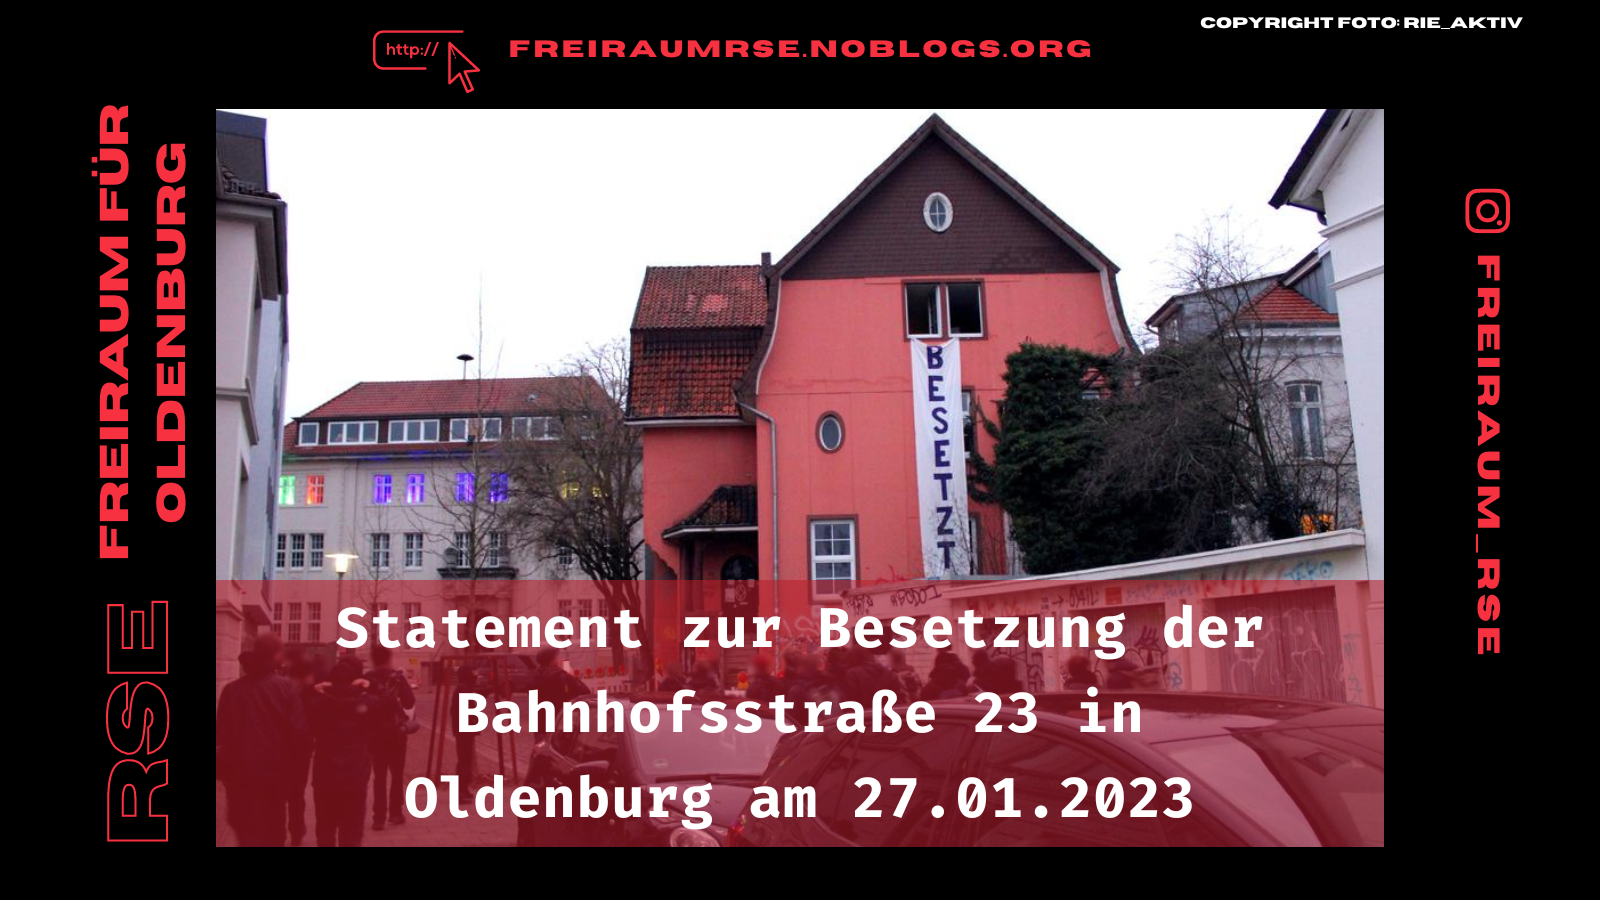 Statement zur Besetzung der Bahnhofsstraße 23 in Oldenburg am 27.01.2023